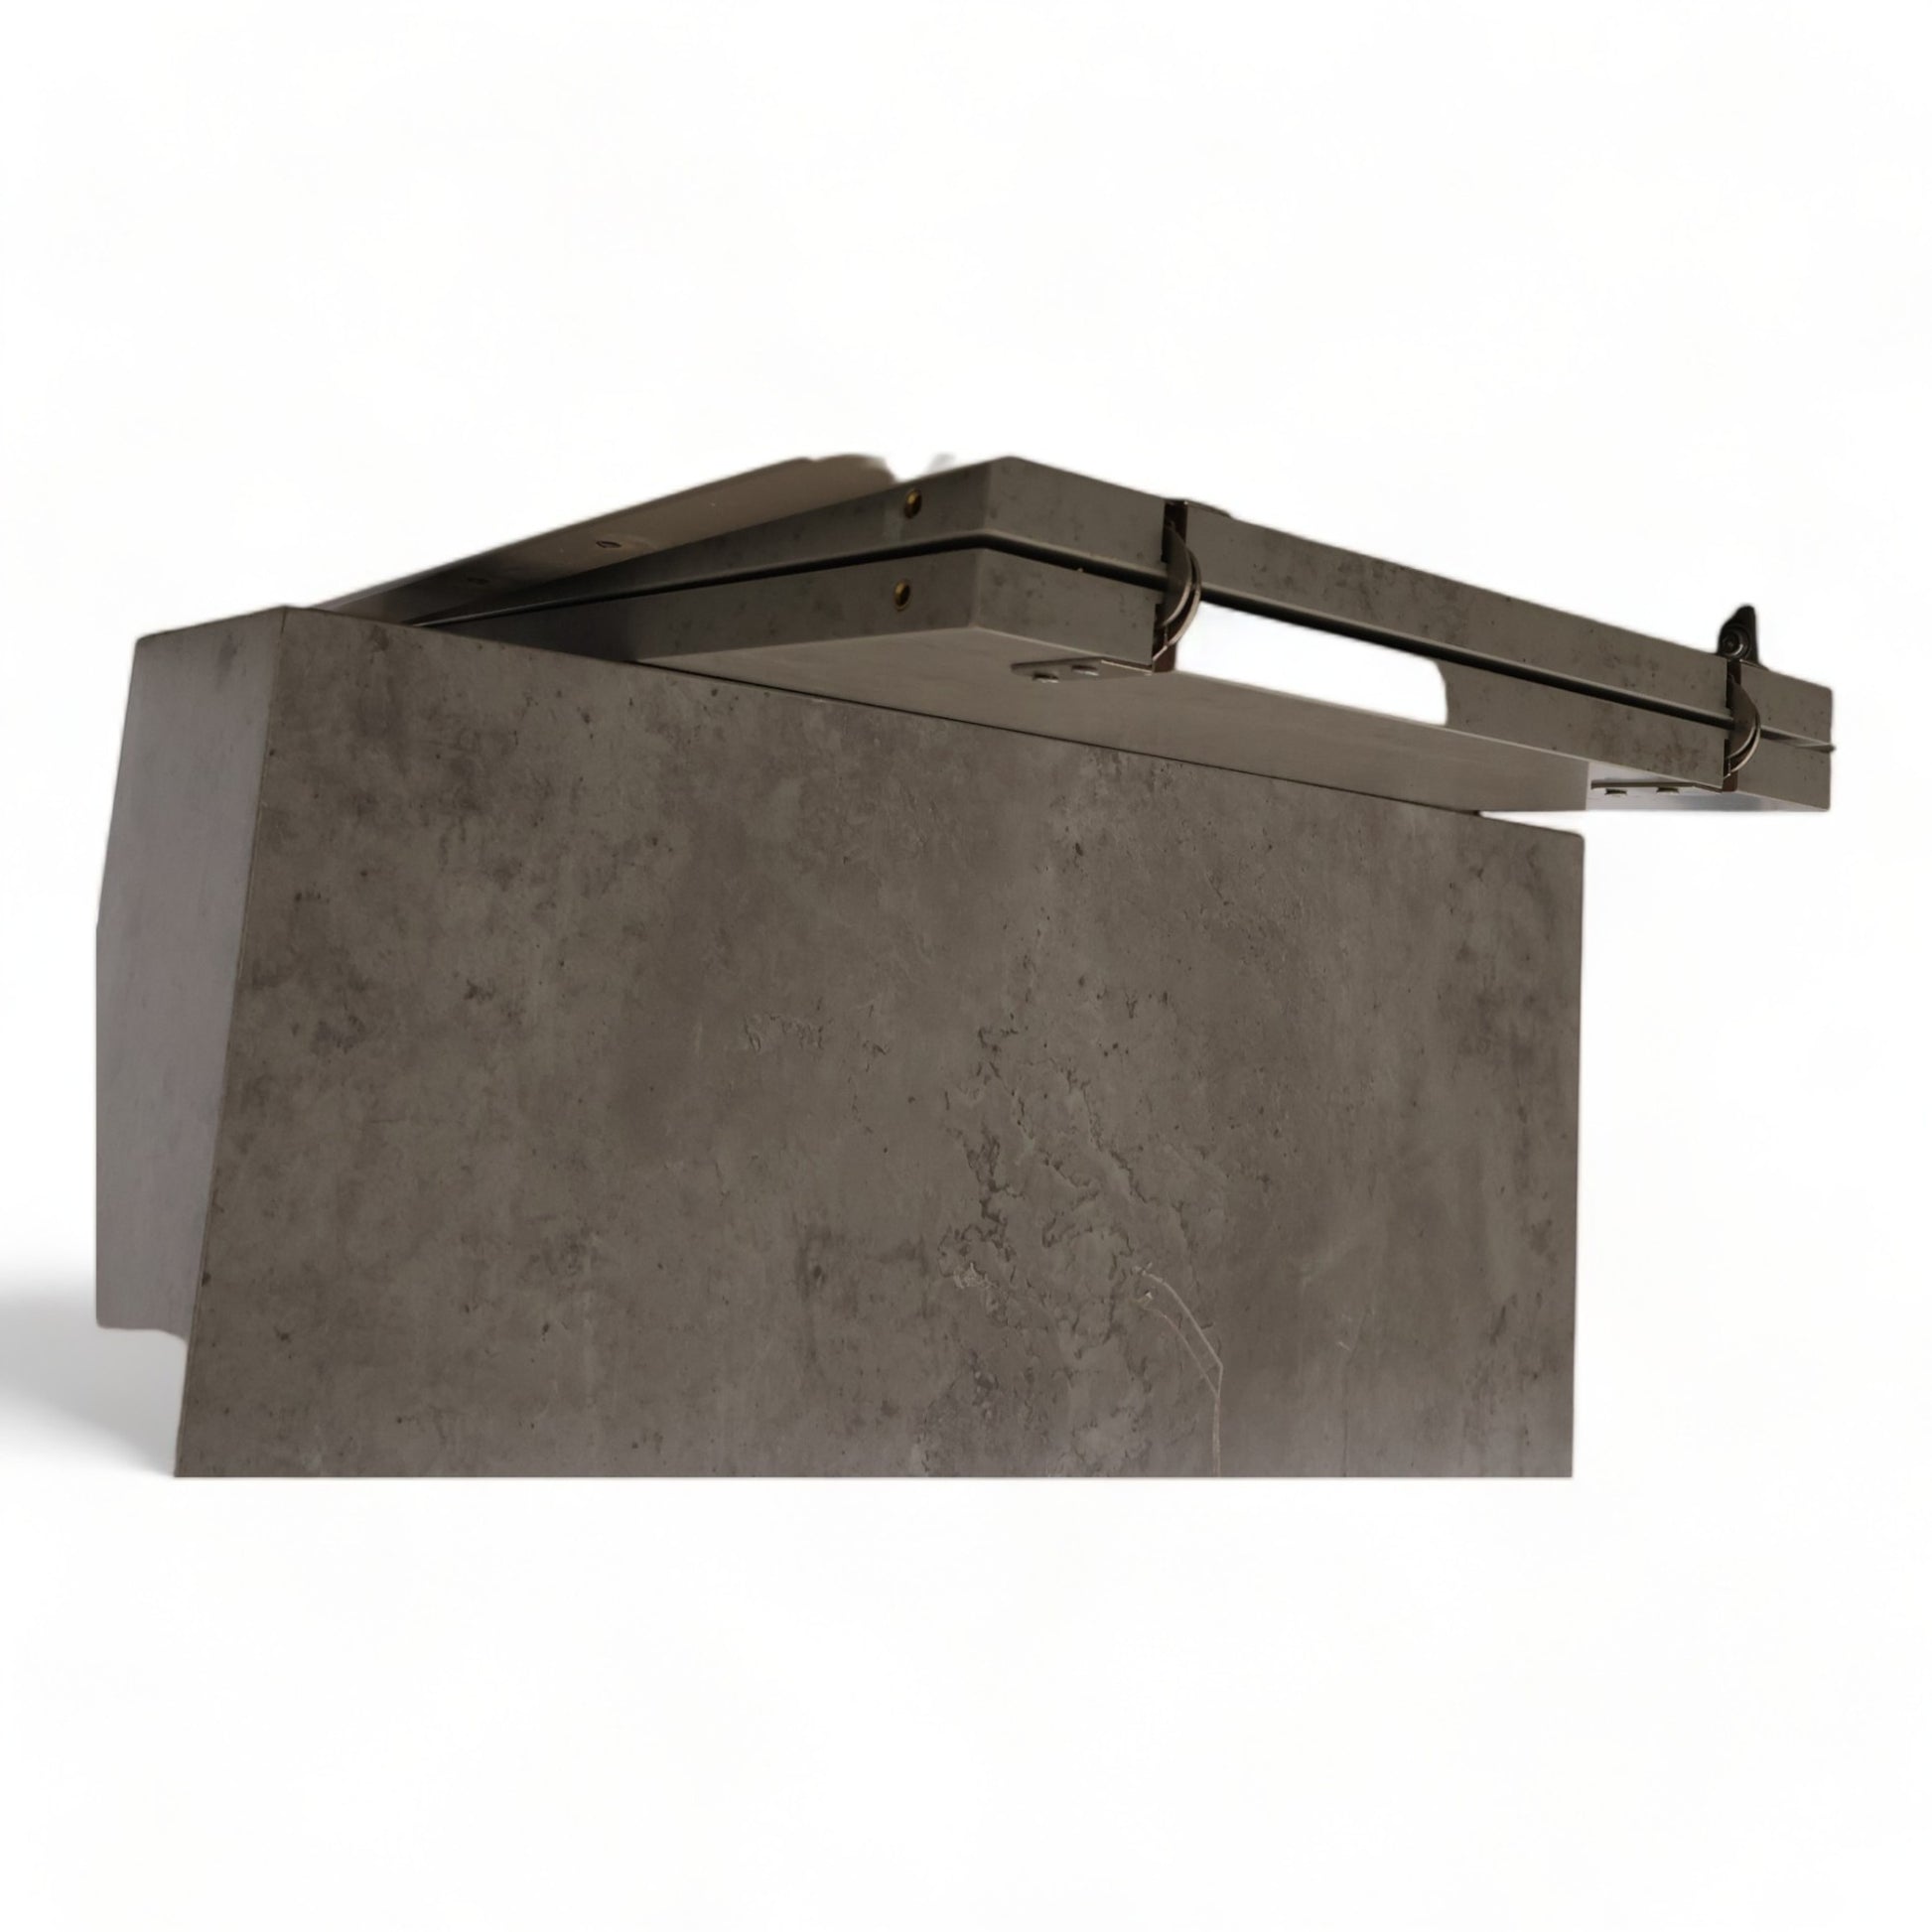 Kvalitetssikret | Moderne betongfarget spisebord med tilleggsplate